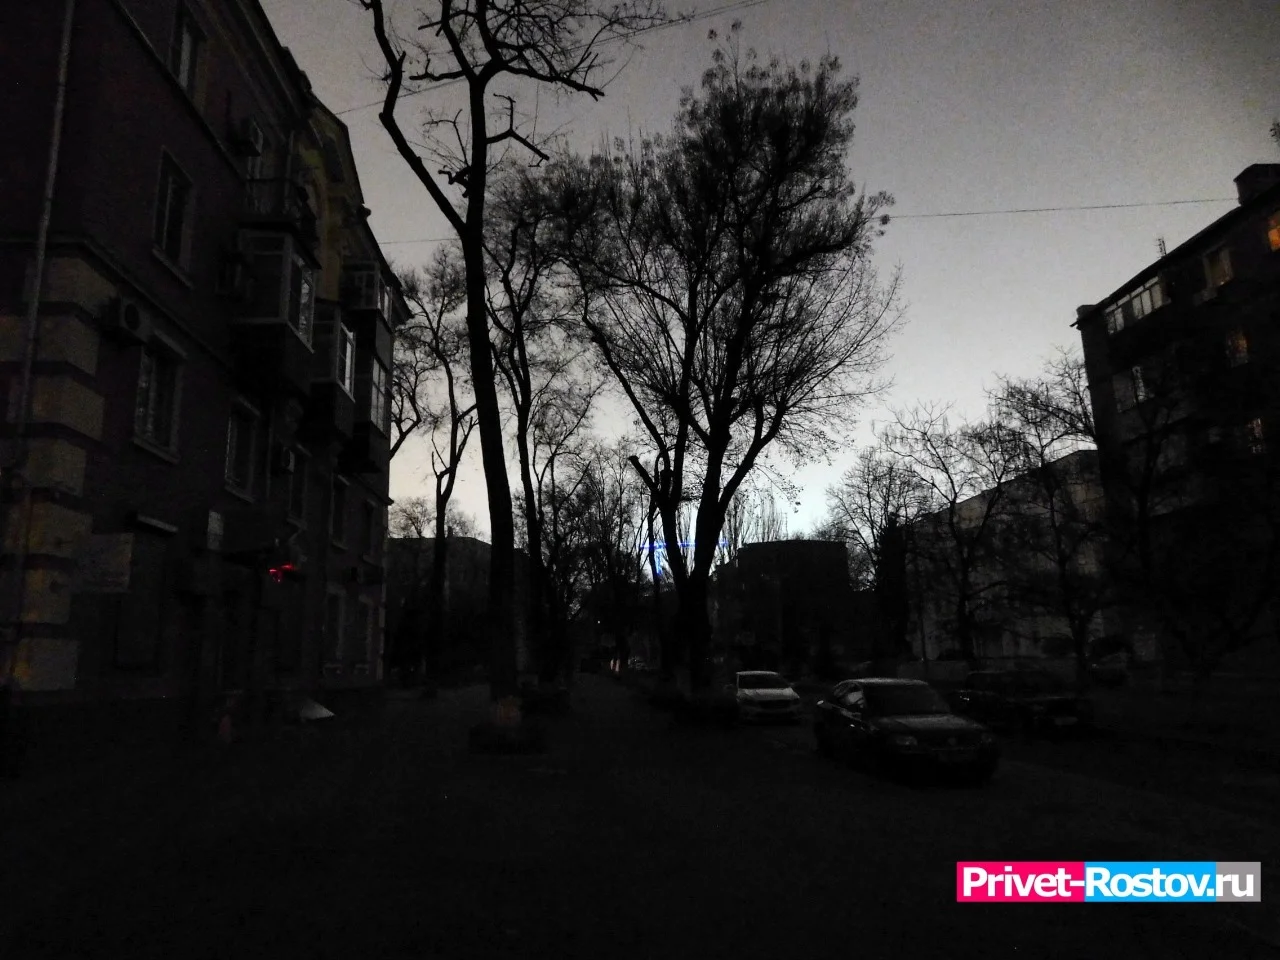 Жители Таганрога и Ростова сообщили о взрывных звуках в небе над городом